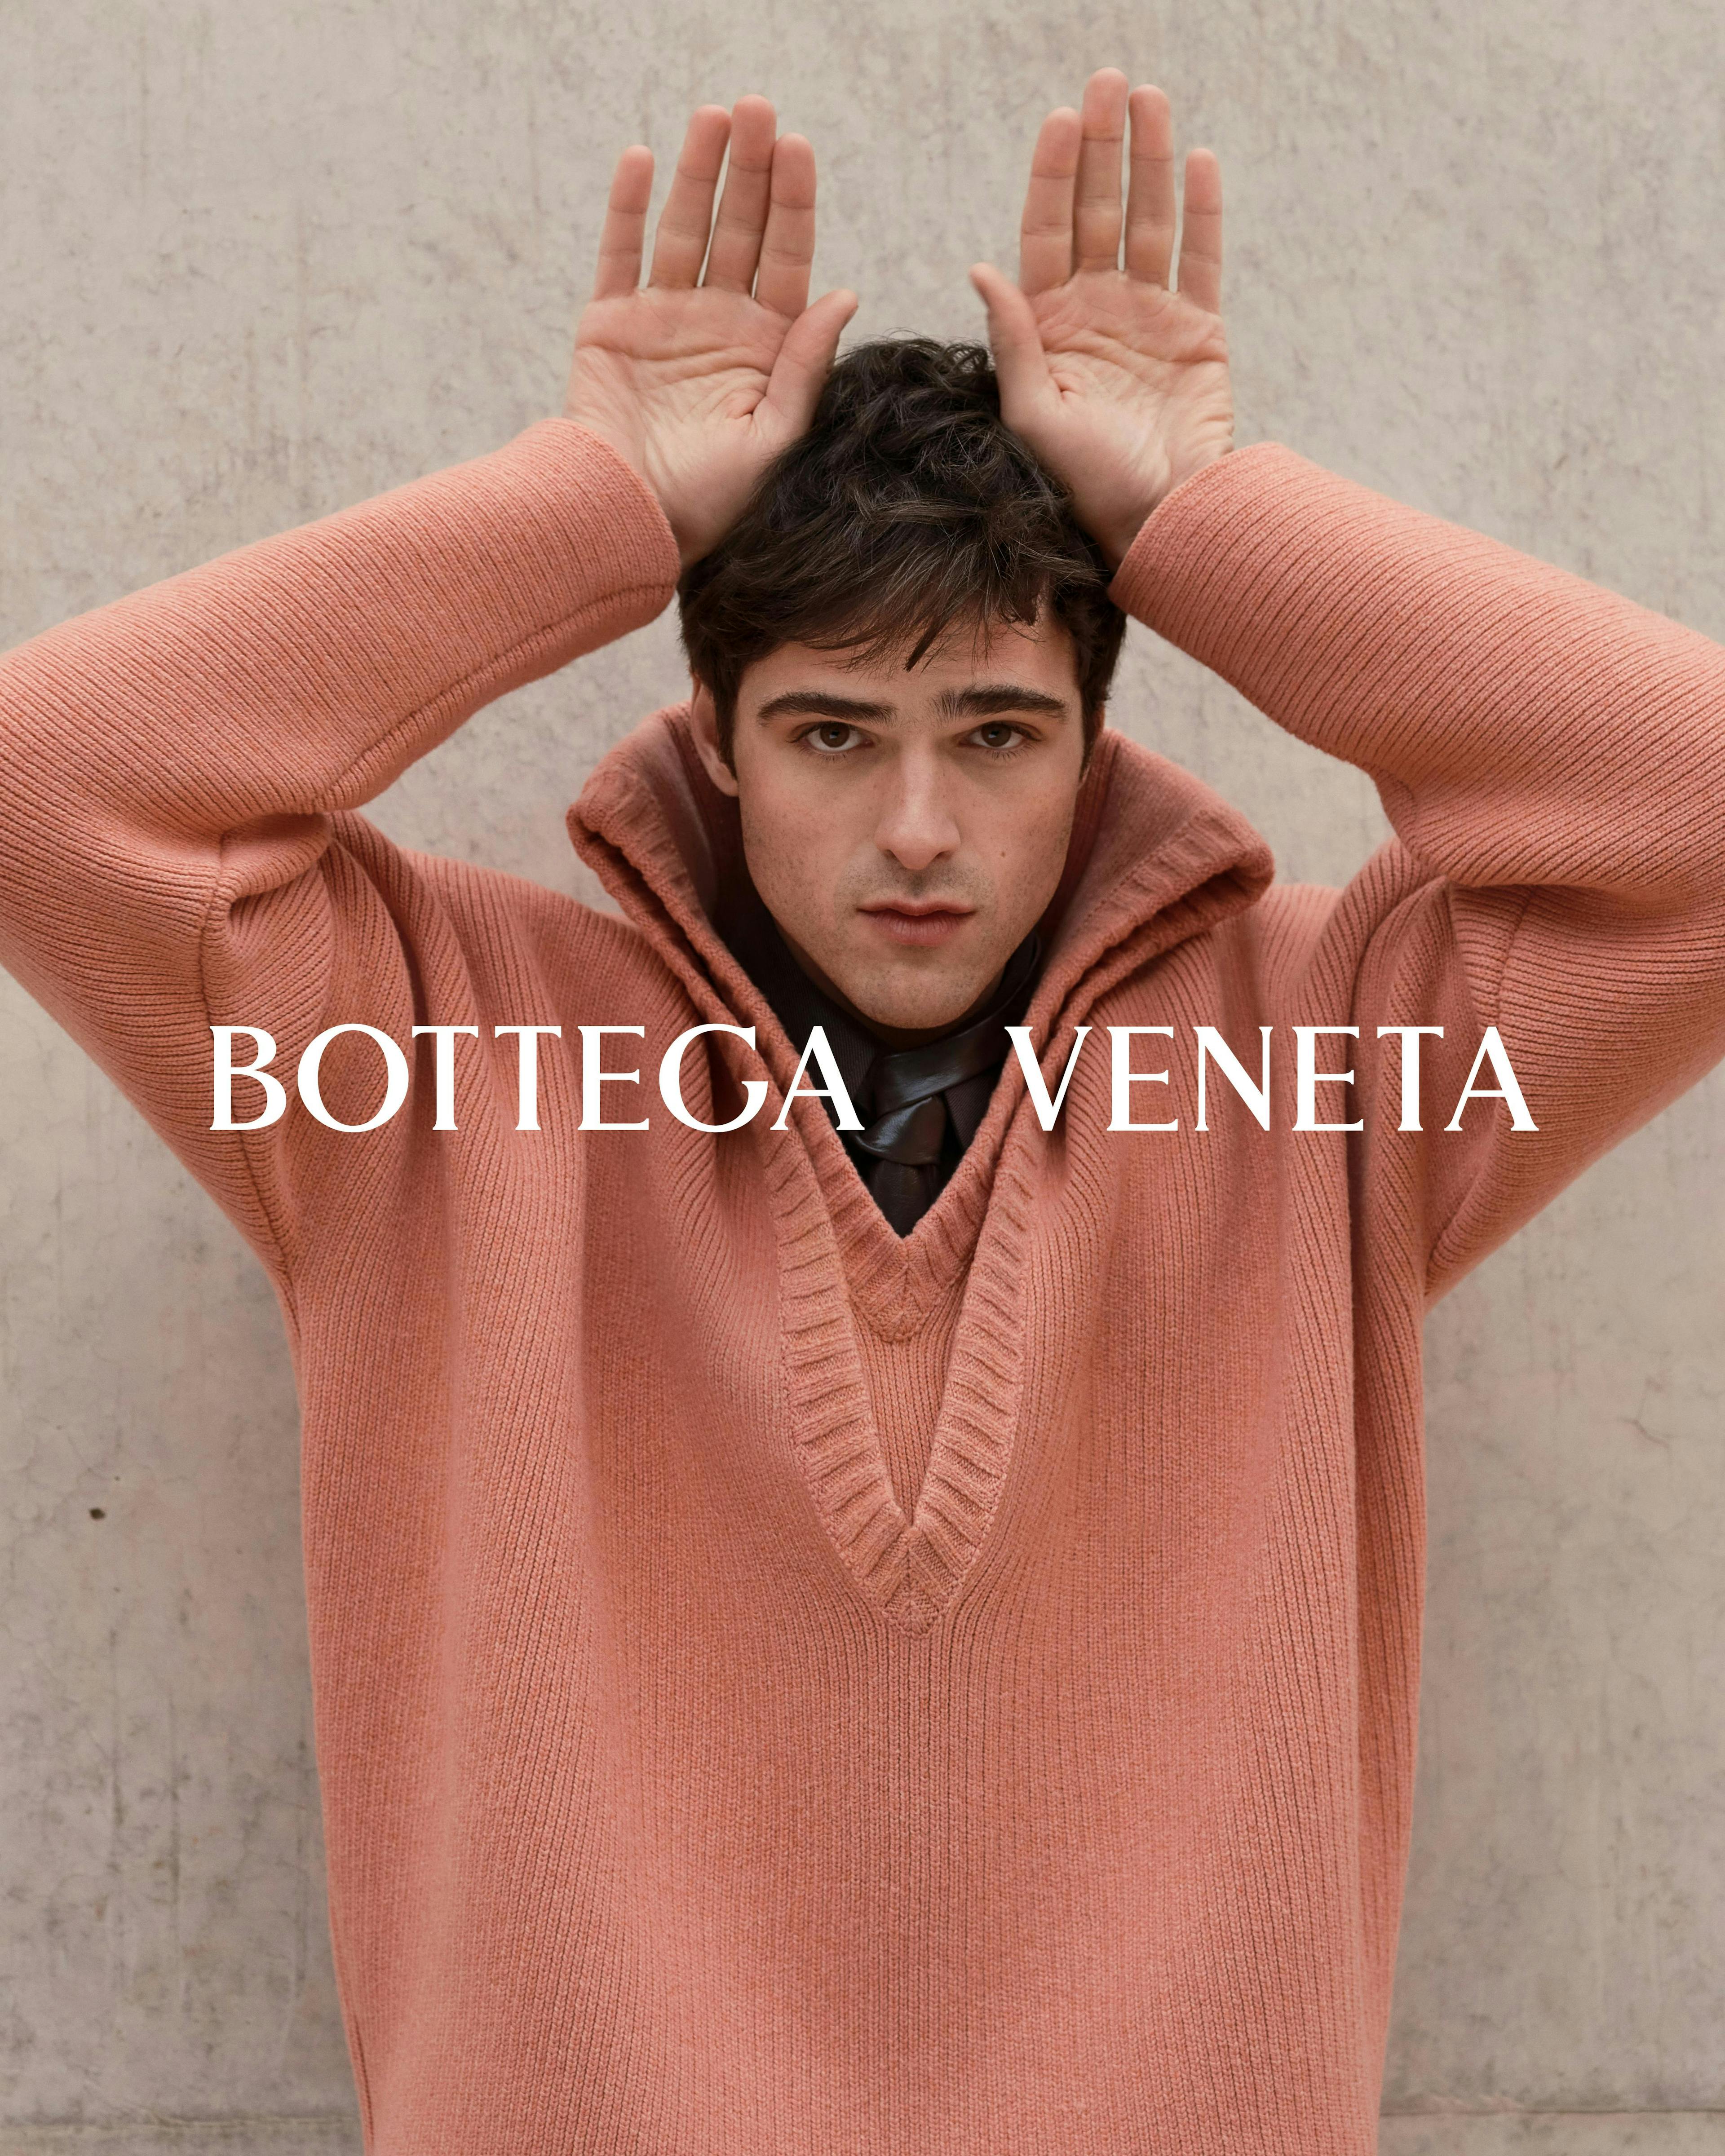 Jacob Elordi nella foto che annuncia l'inizio della collaborazione con Bottega Veneta come Brand Ambassador (Alec Soth/Courtesy Bottega Veneta)